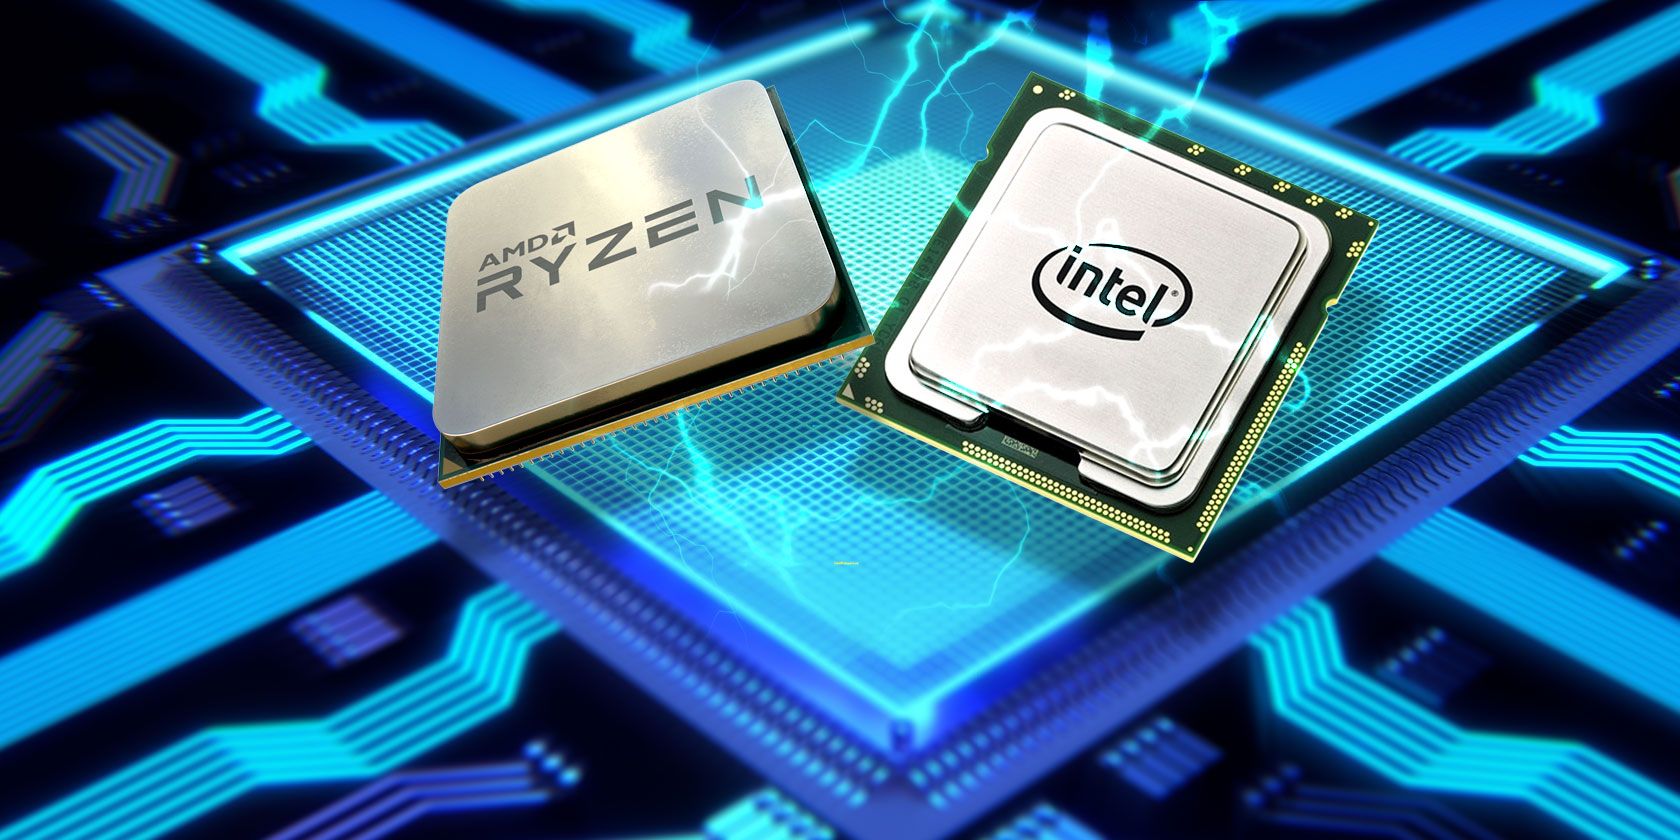 Procesor w gamingowym laptopie: Intel czy AMD?